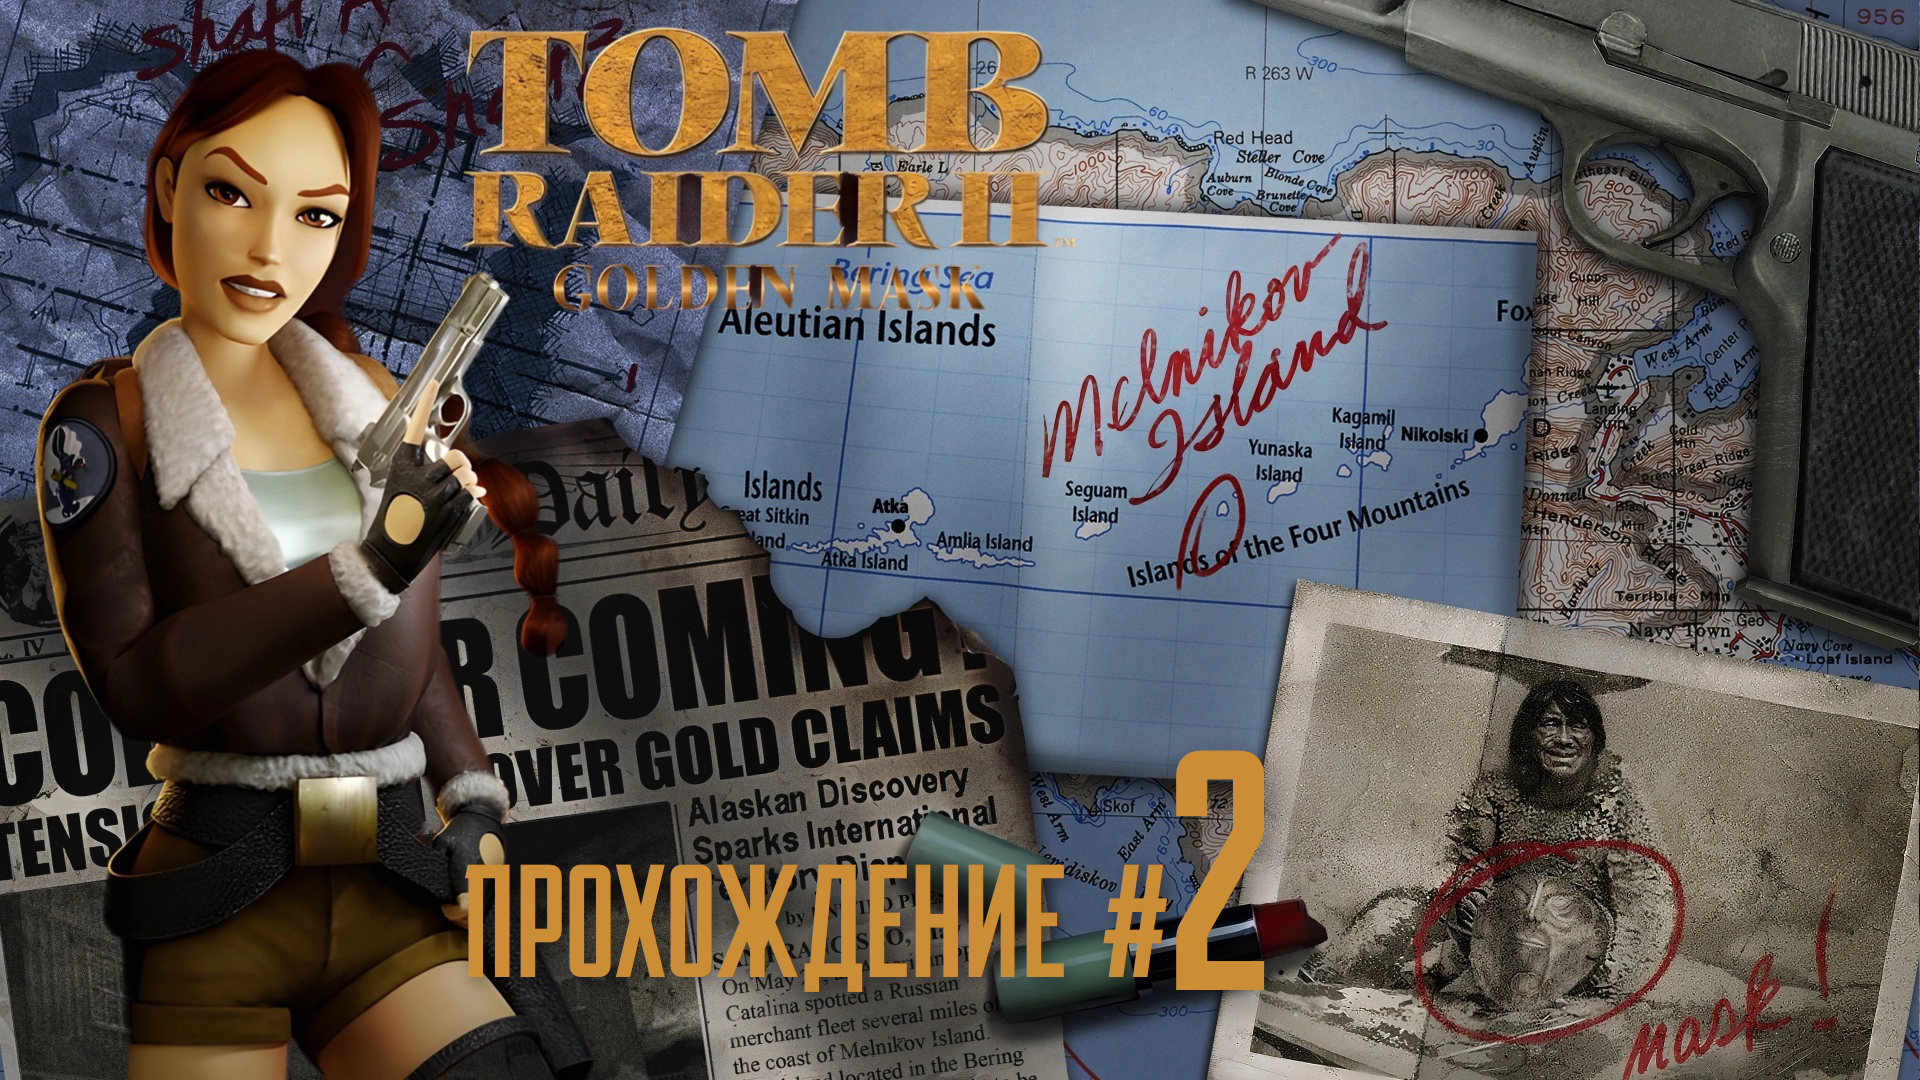 TOMB RAIDER 2 REMASTERED ДЛС  Золотая маска Golden Mask DLC - Прохождение #2. Золото дураков, Сталин